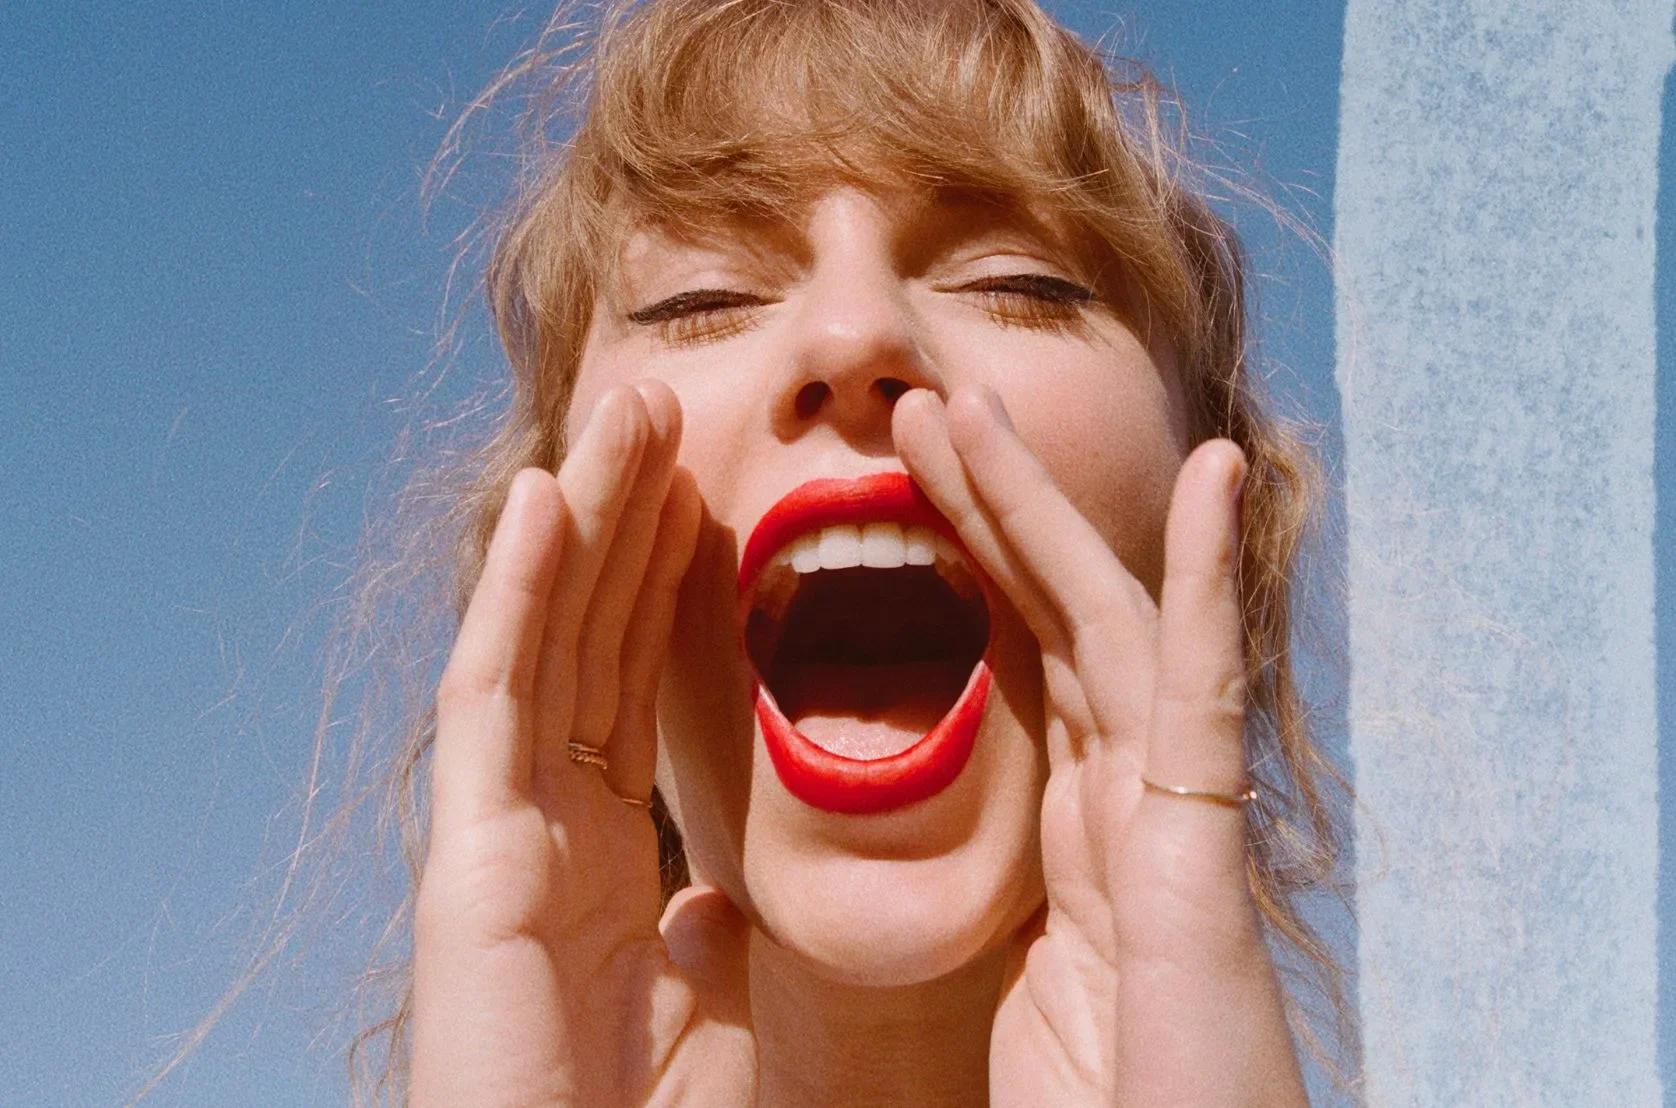 Taylor Swift incentiva fãs a se registrarem para votar e resultados impressionam